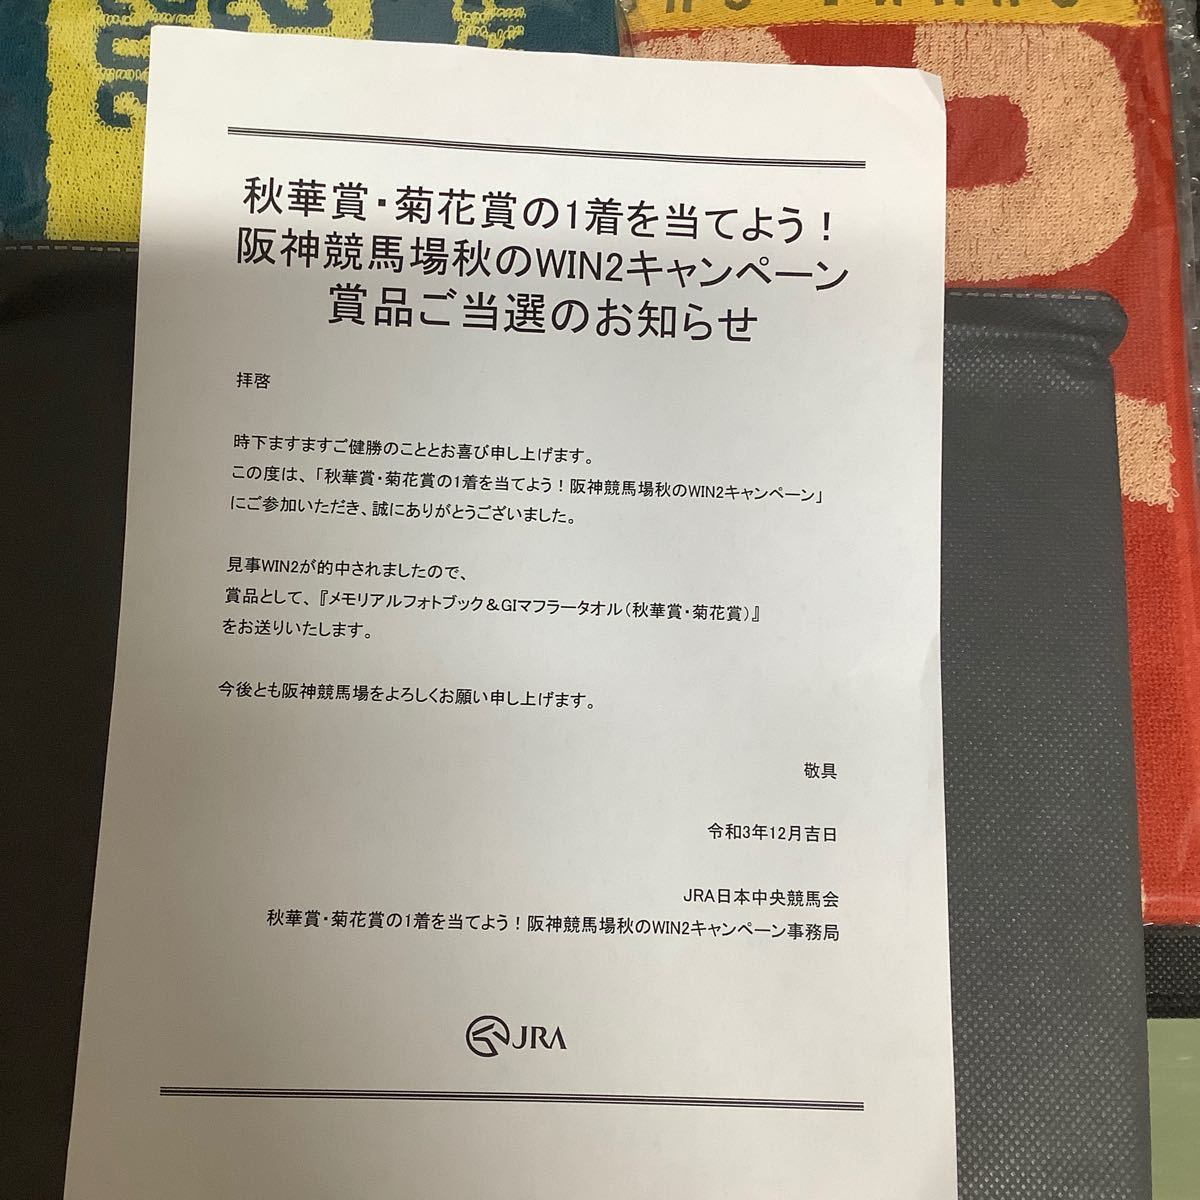 9750円 当季大流行 UMA CARD PAVILION 阪神競馬場 コンプリートブック